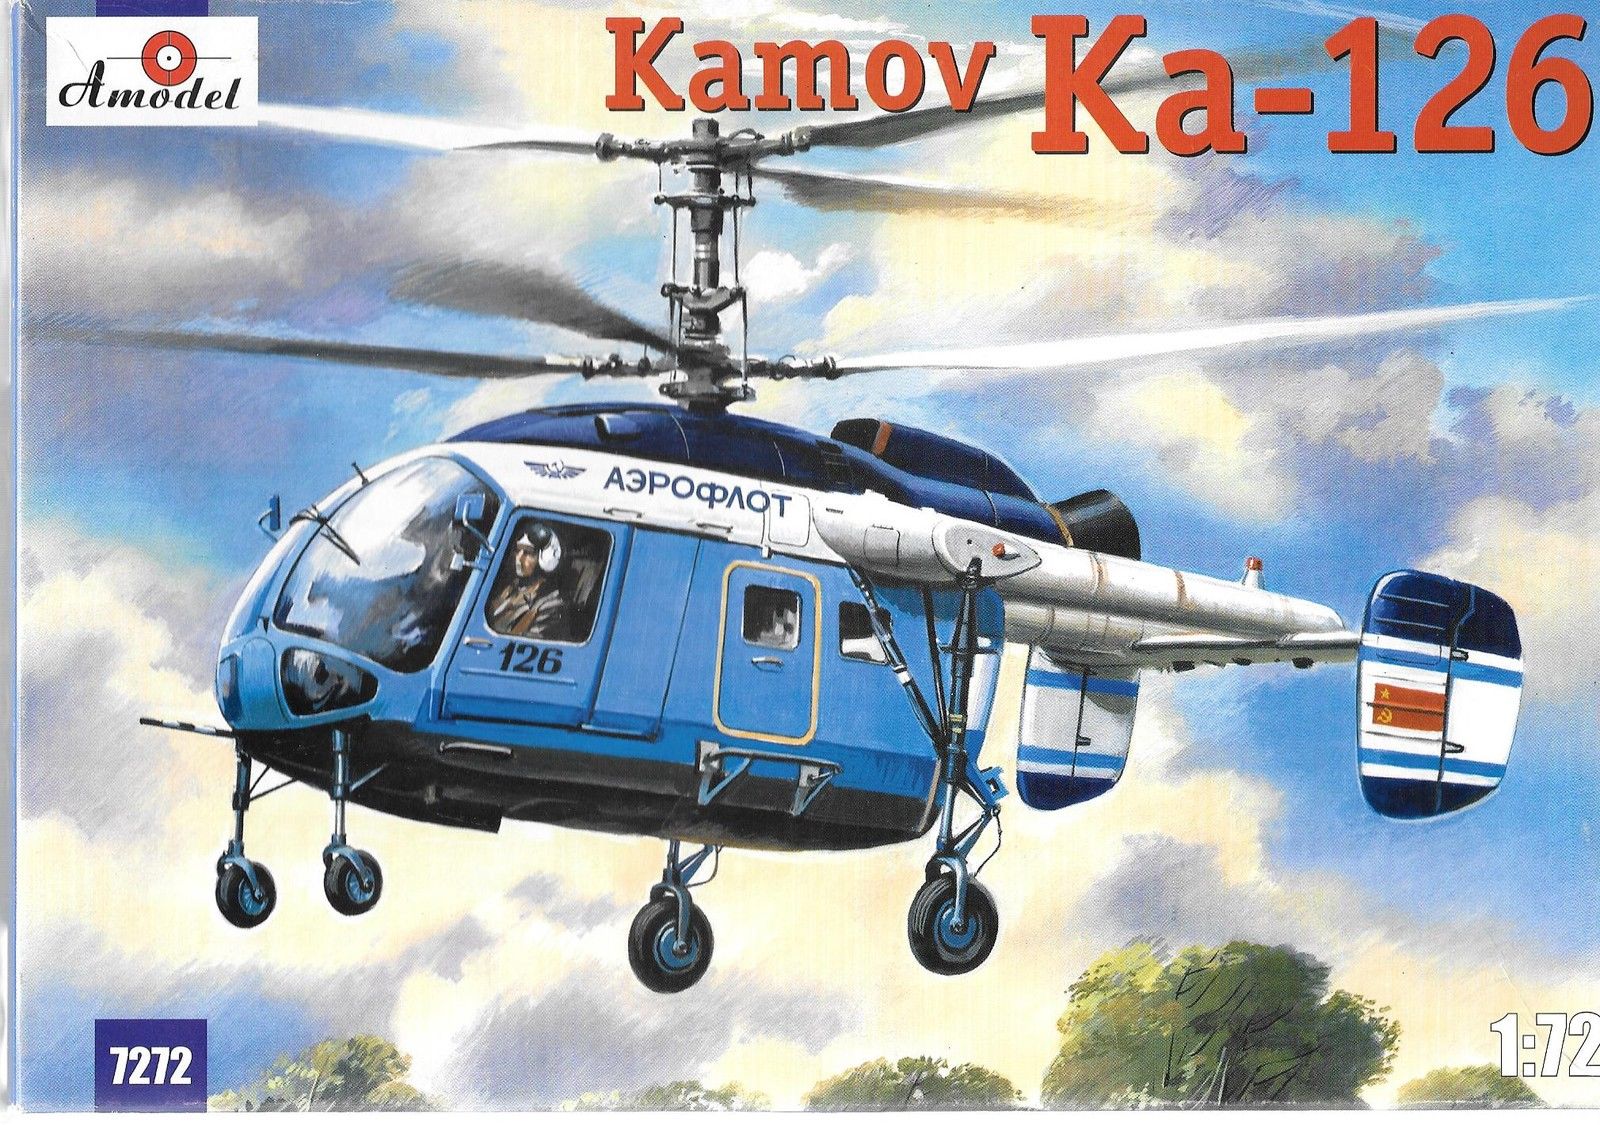 Kamov Ka-126